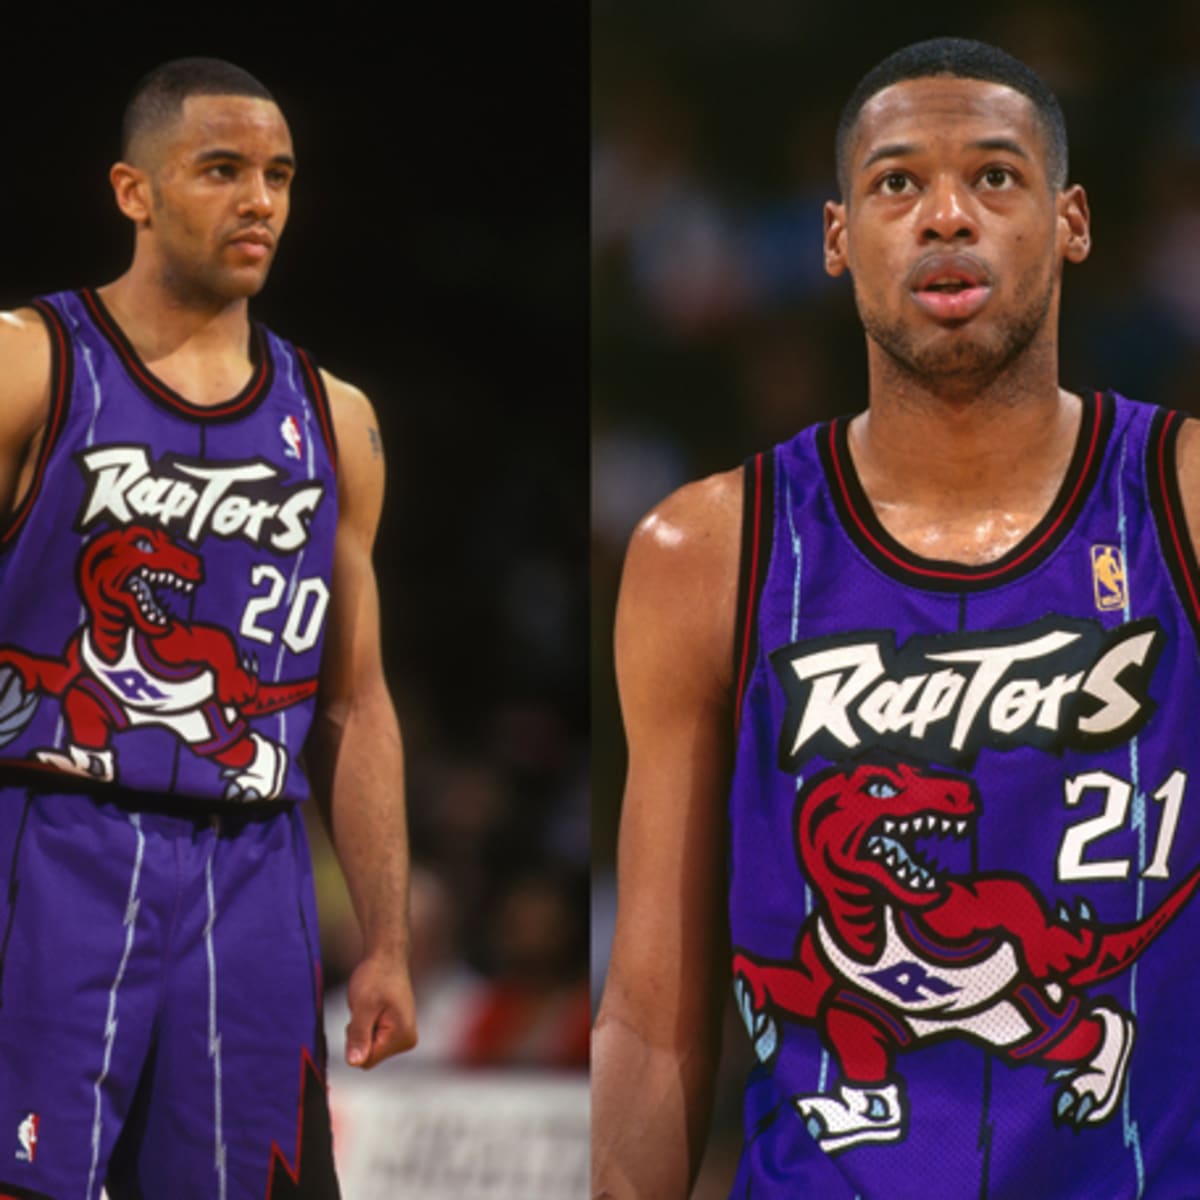 behandle rack Held og lykke Raptors to wear purple 'Dino' throwback jerseys during 2014-15 season -  Sports Illustrated